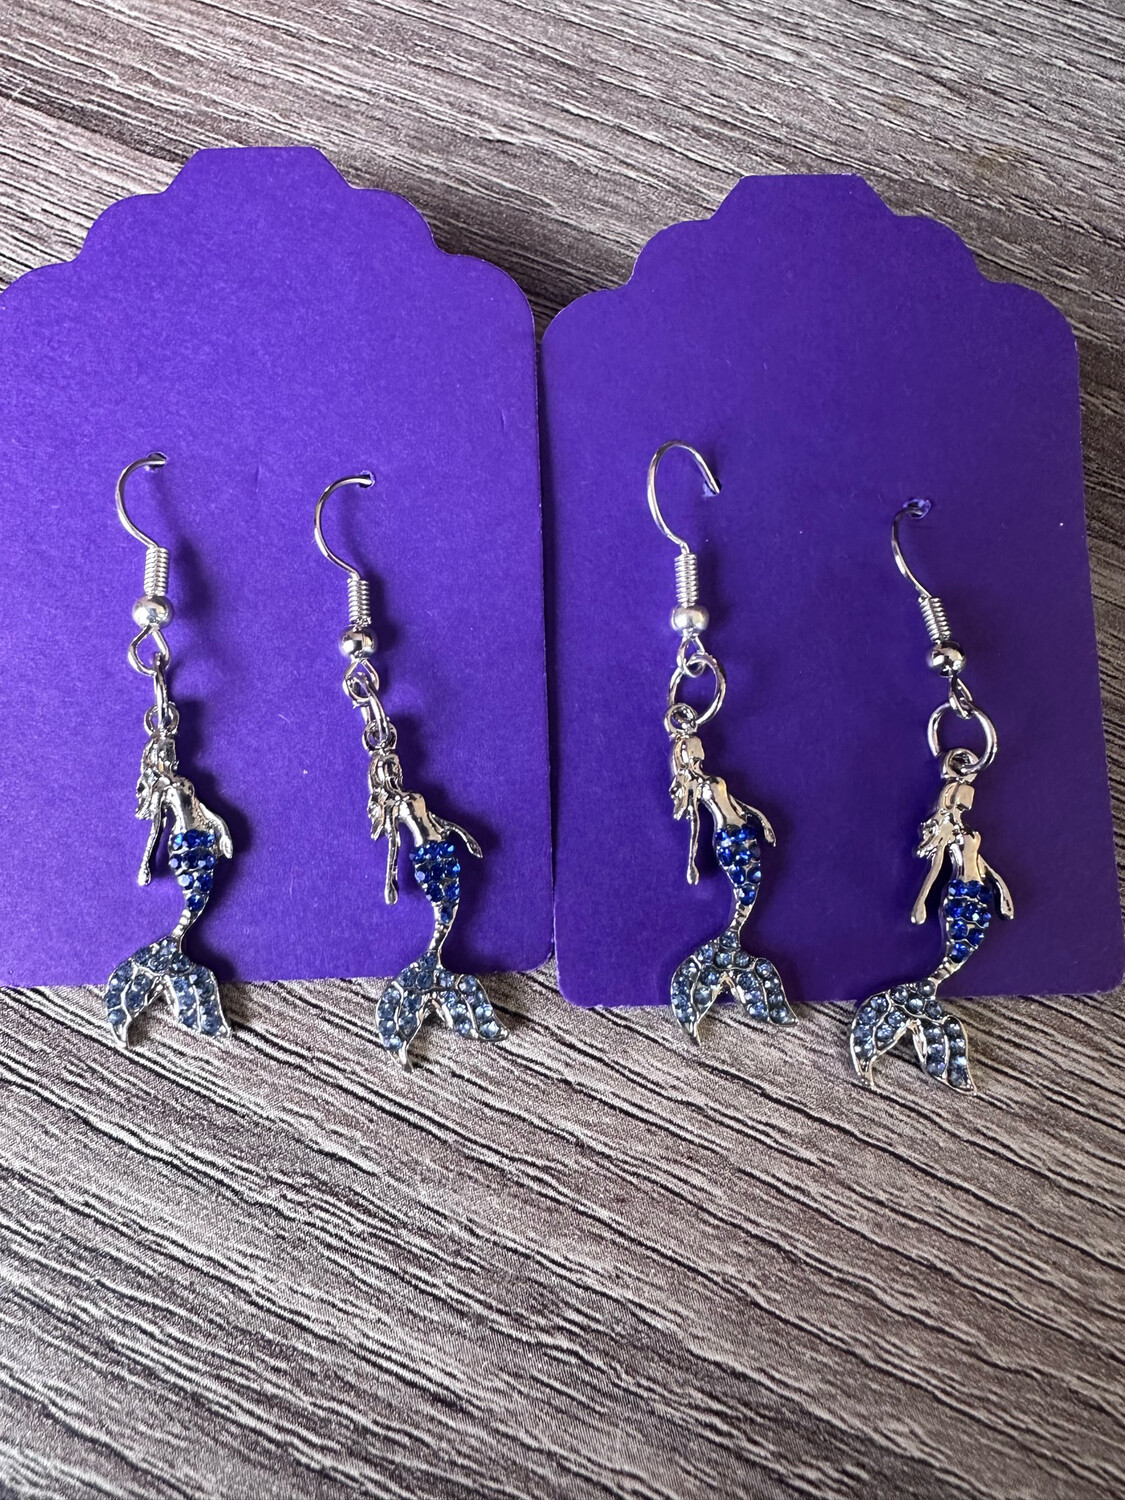 Blue Mermaid Earrings